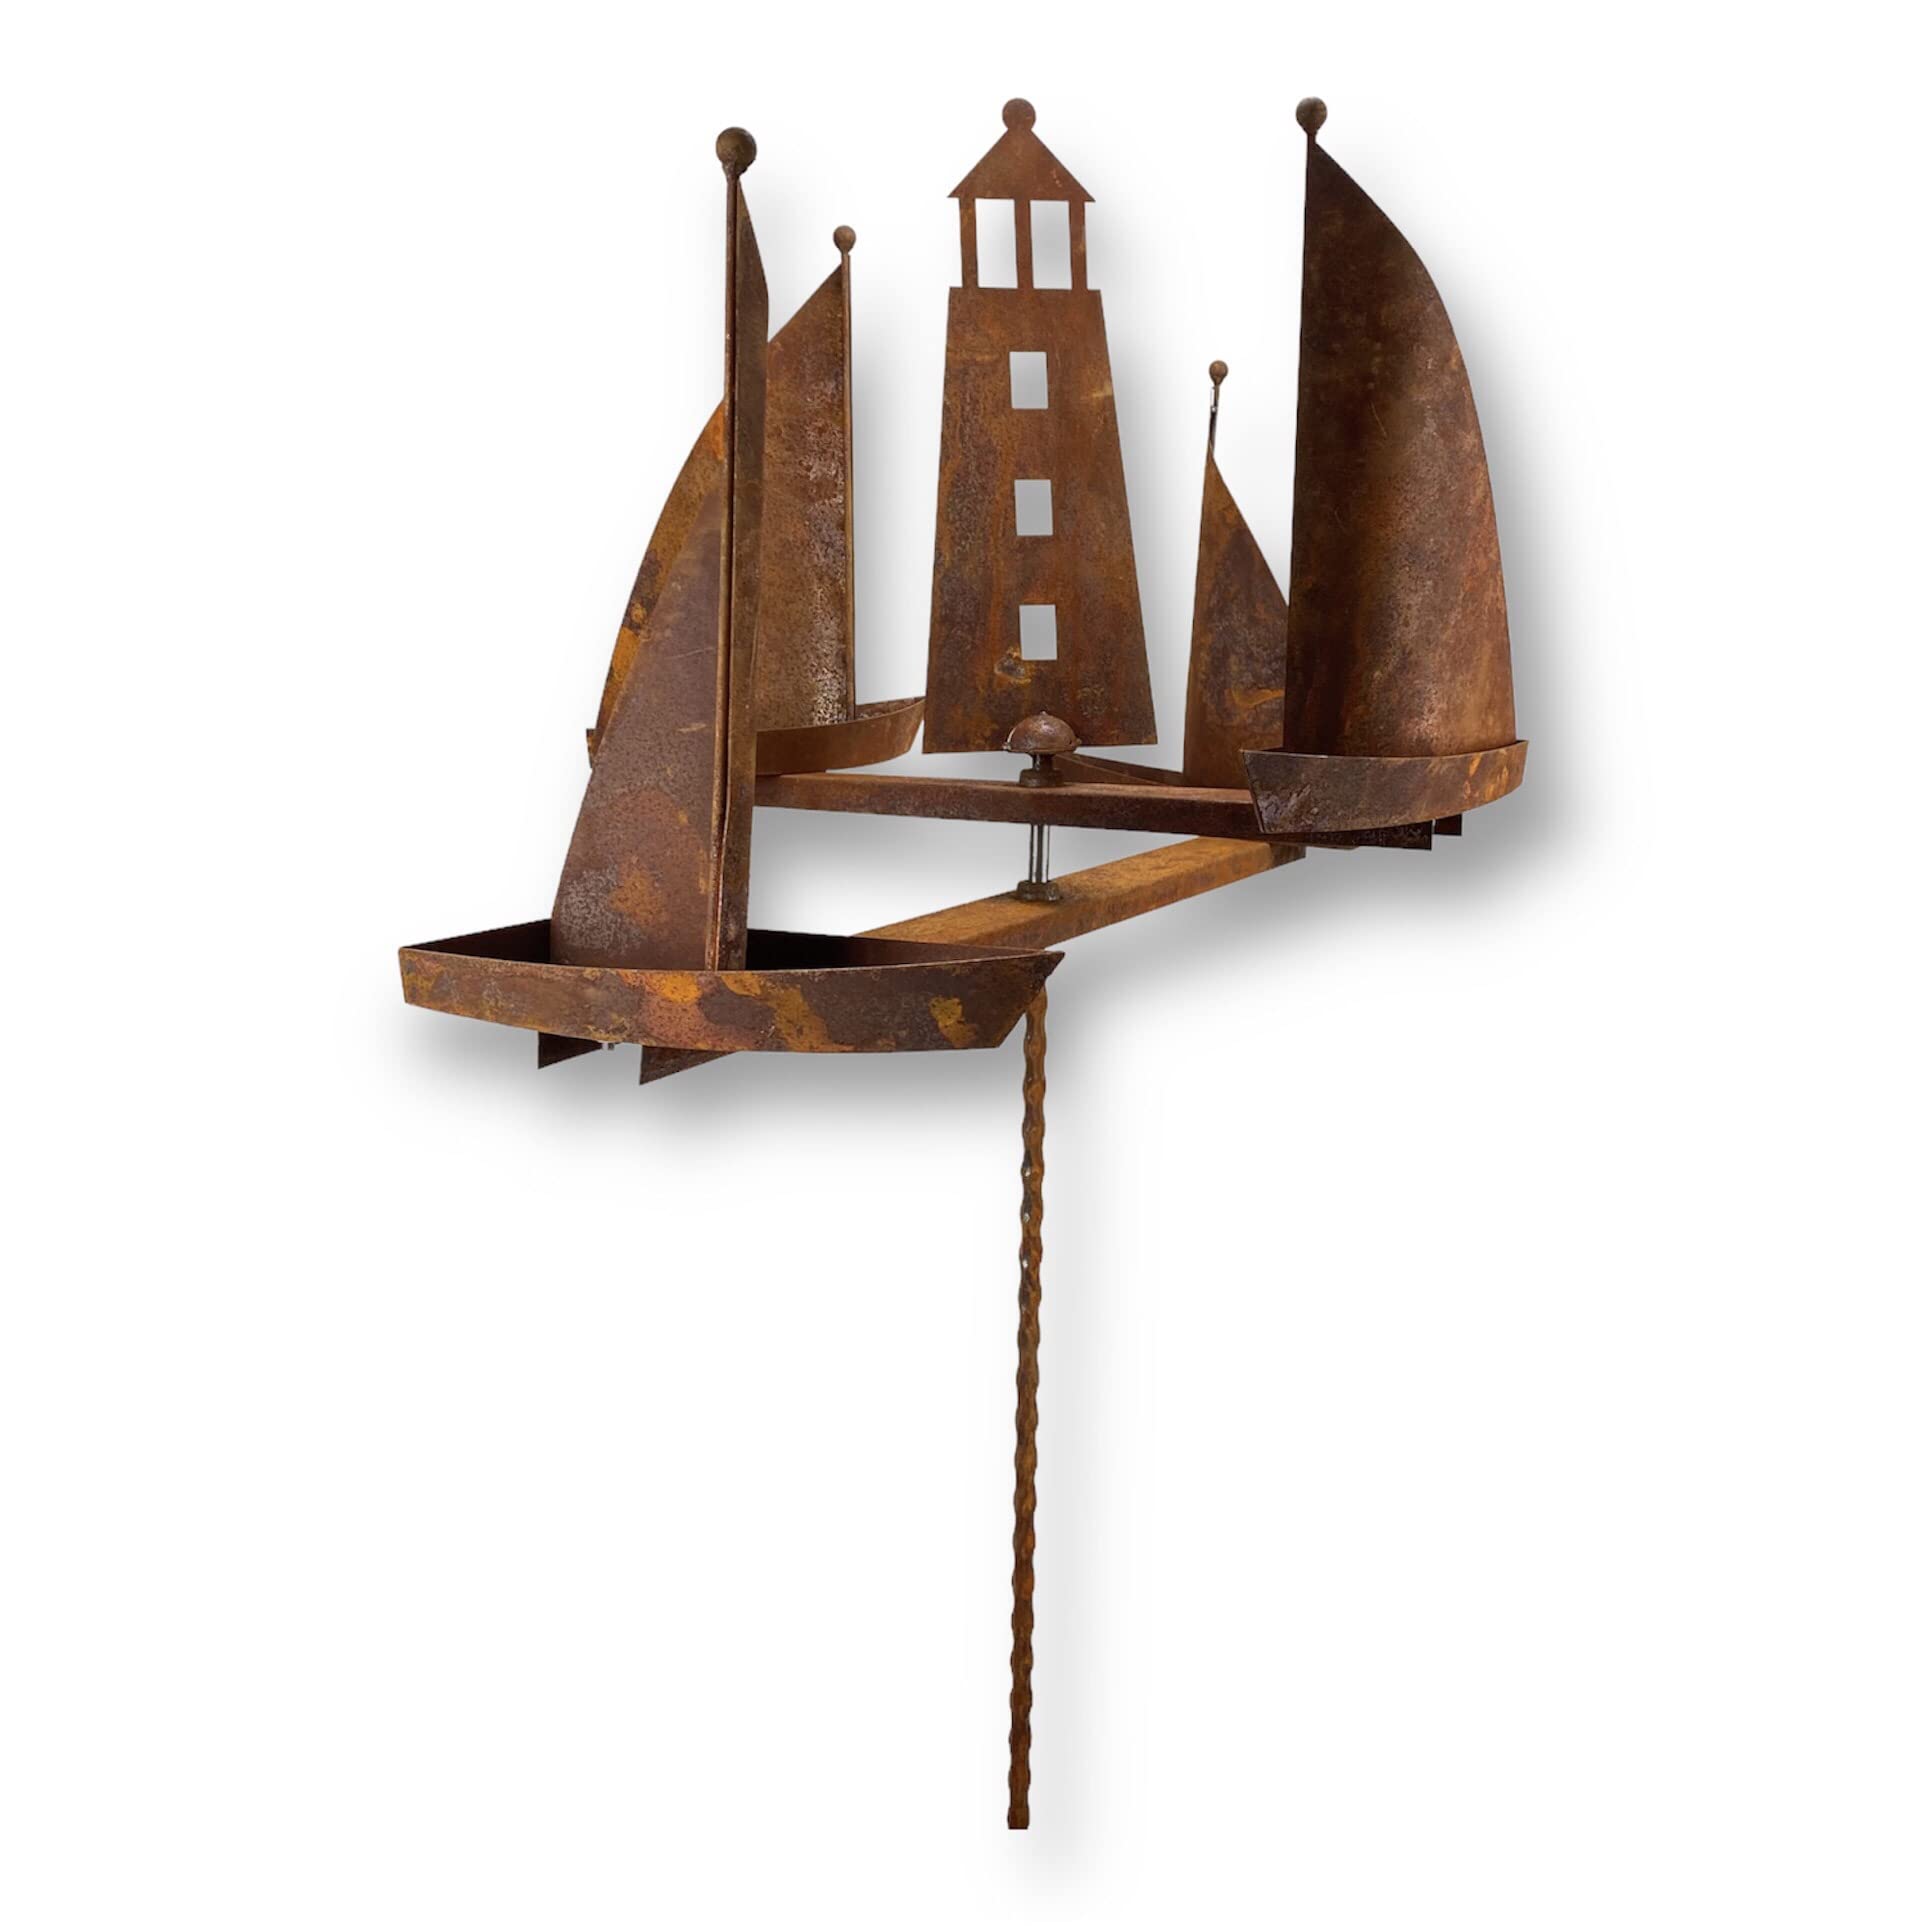 Metall Windrad 'Segelboote' - massives Windspiel Windmühle für den Garten - wetterfest und standfest - mit besten Kugellagern - aus Vollmetall mit Edelrost-Patina – Höhe 190 cm